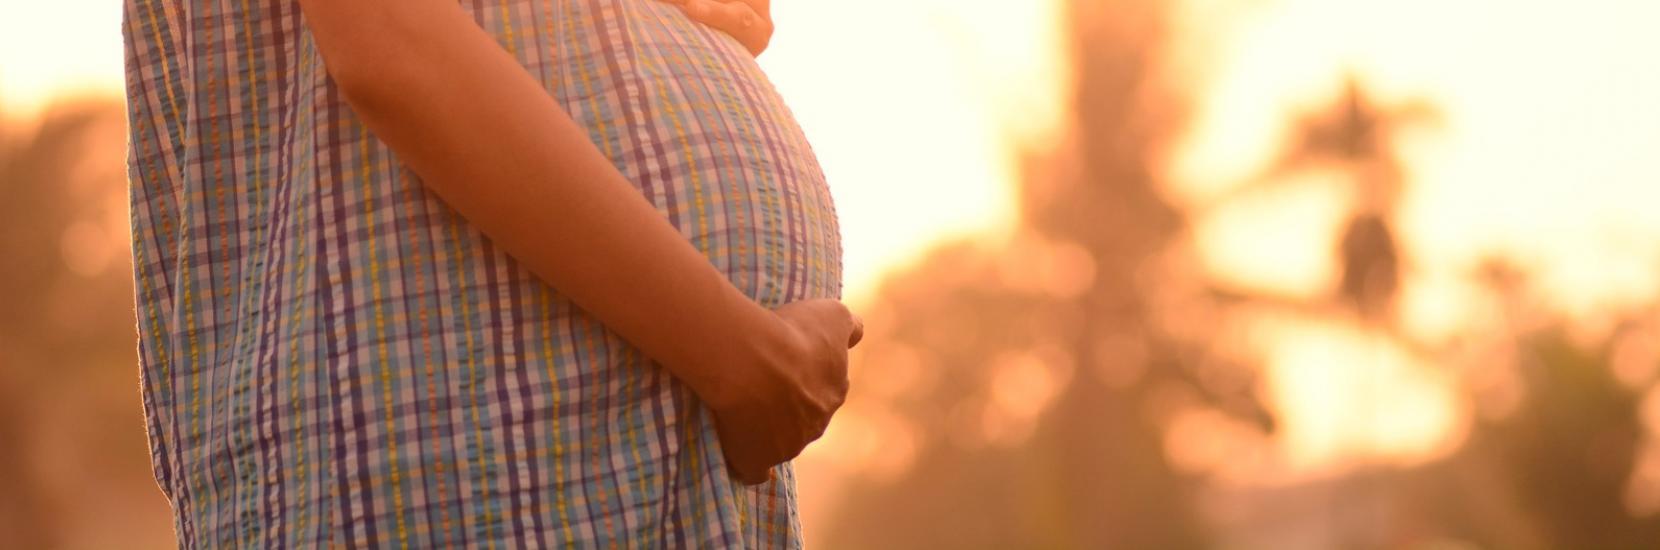 Le suivi prénatal: Consultations complémentaires et personnalisées